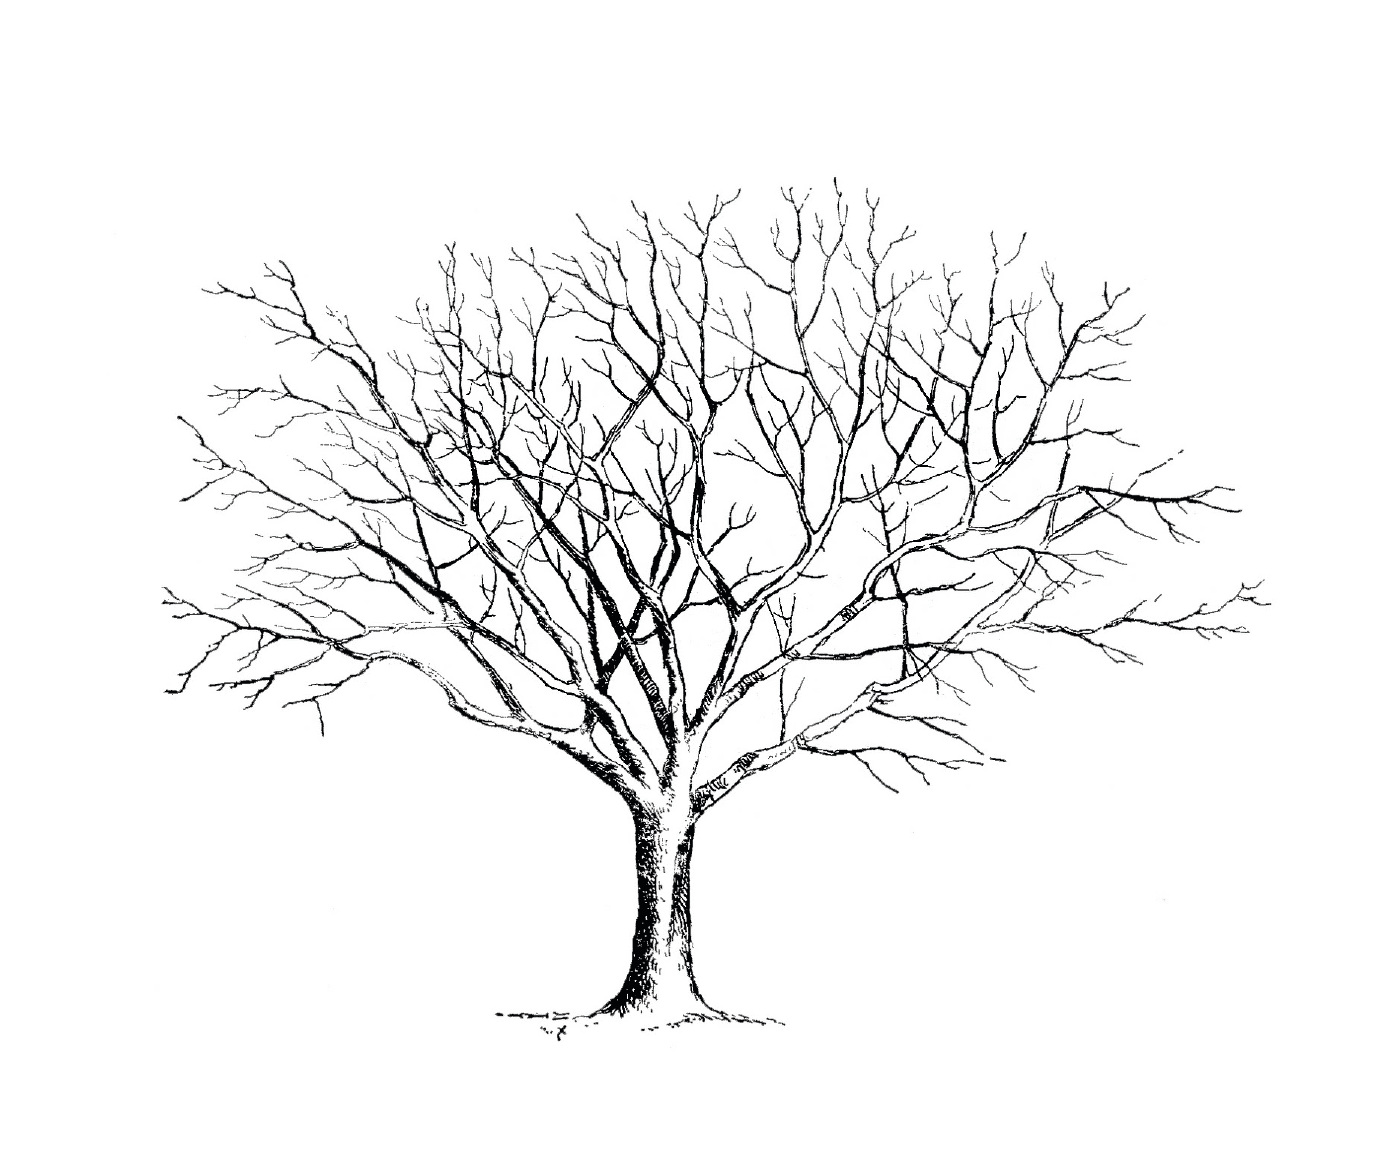   Un arbre dénudé sans feuilles 